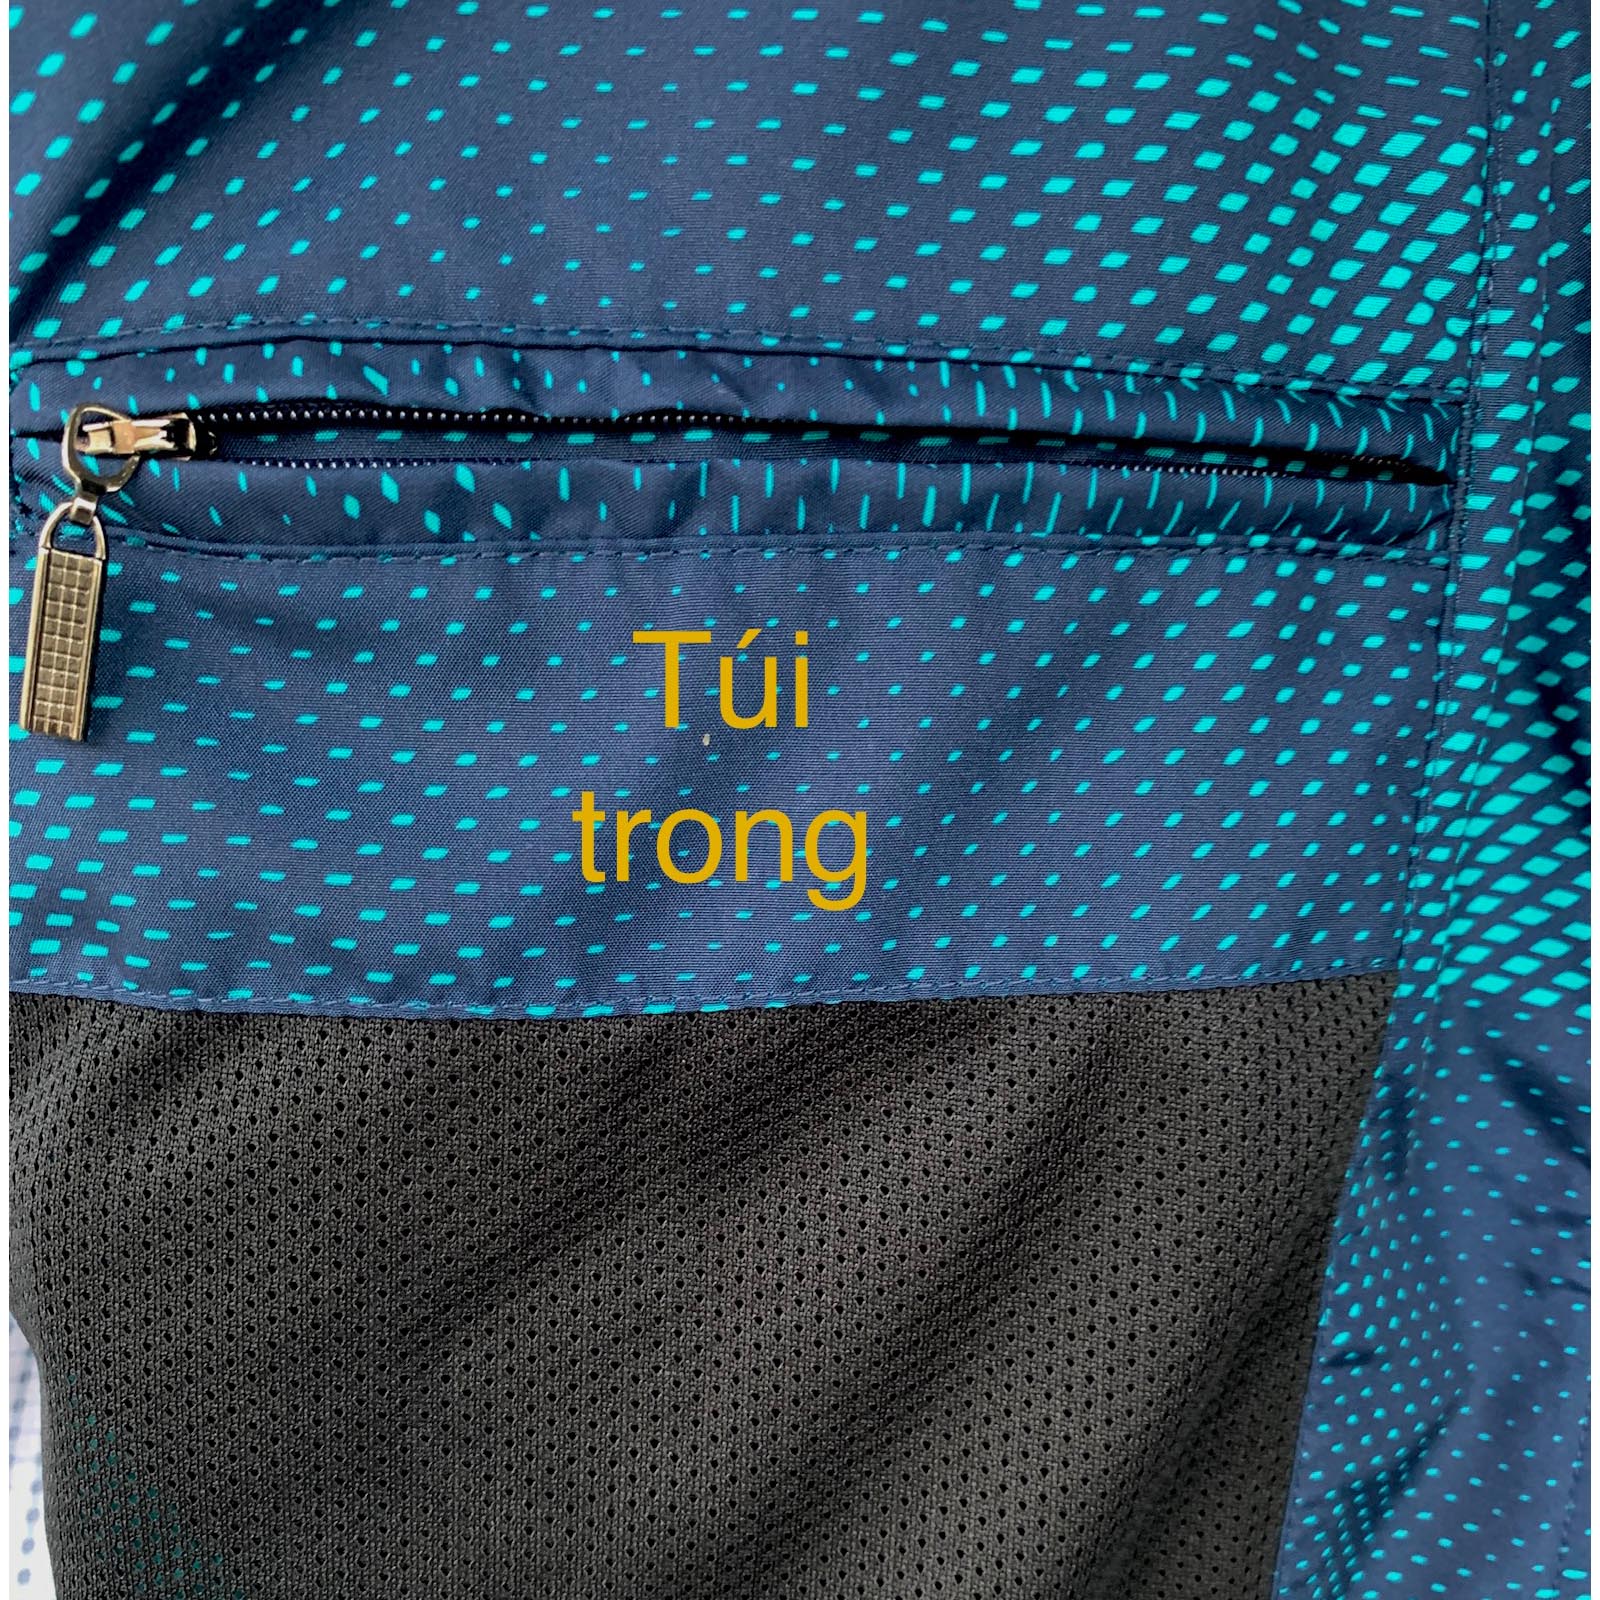 Áo Khoác nam Việt Tiến mẫu mới 6Q5005 có 2 màu xanh và màu đen - Áo Jacket nam - Áo khoác nhẹ nam 2 lớp Viettien